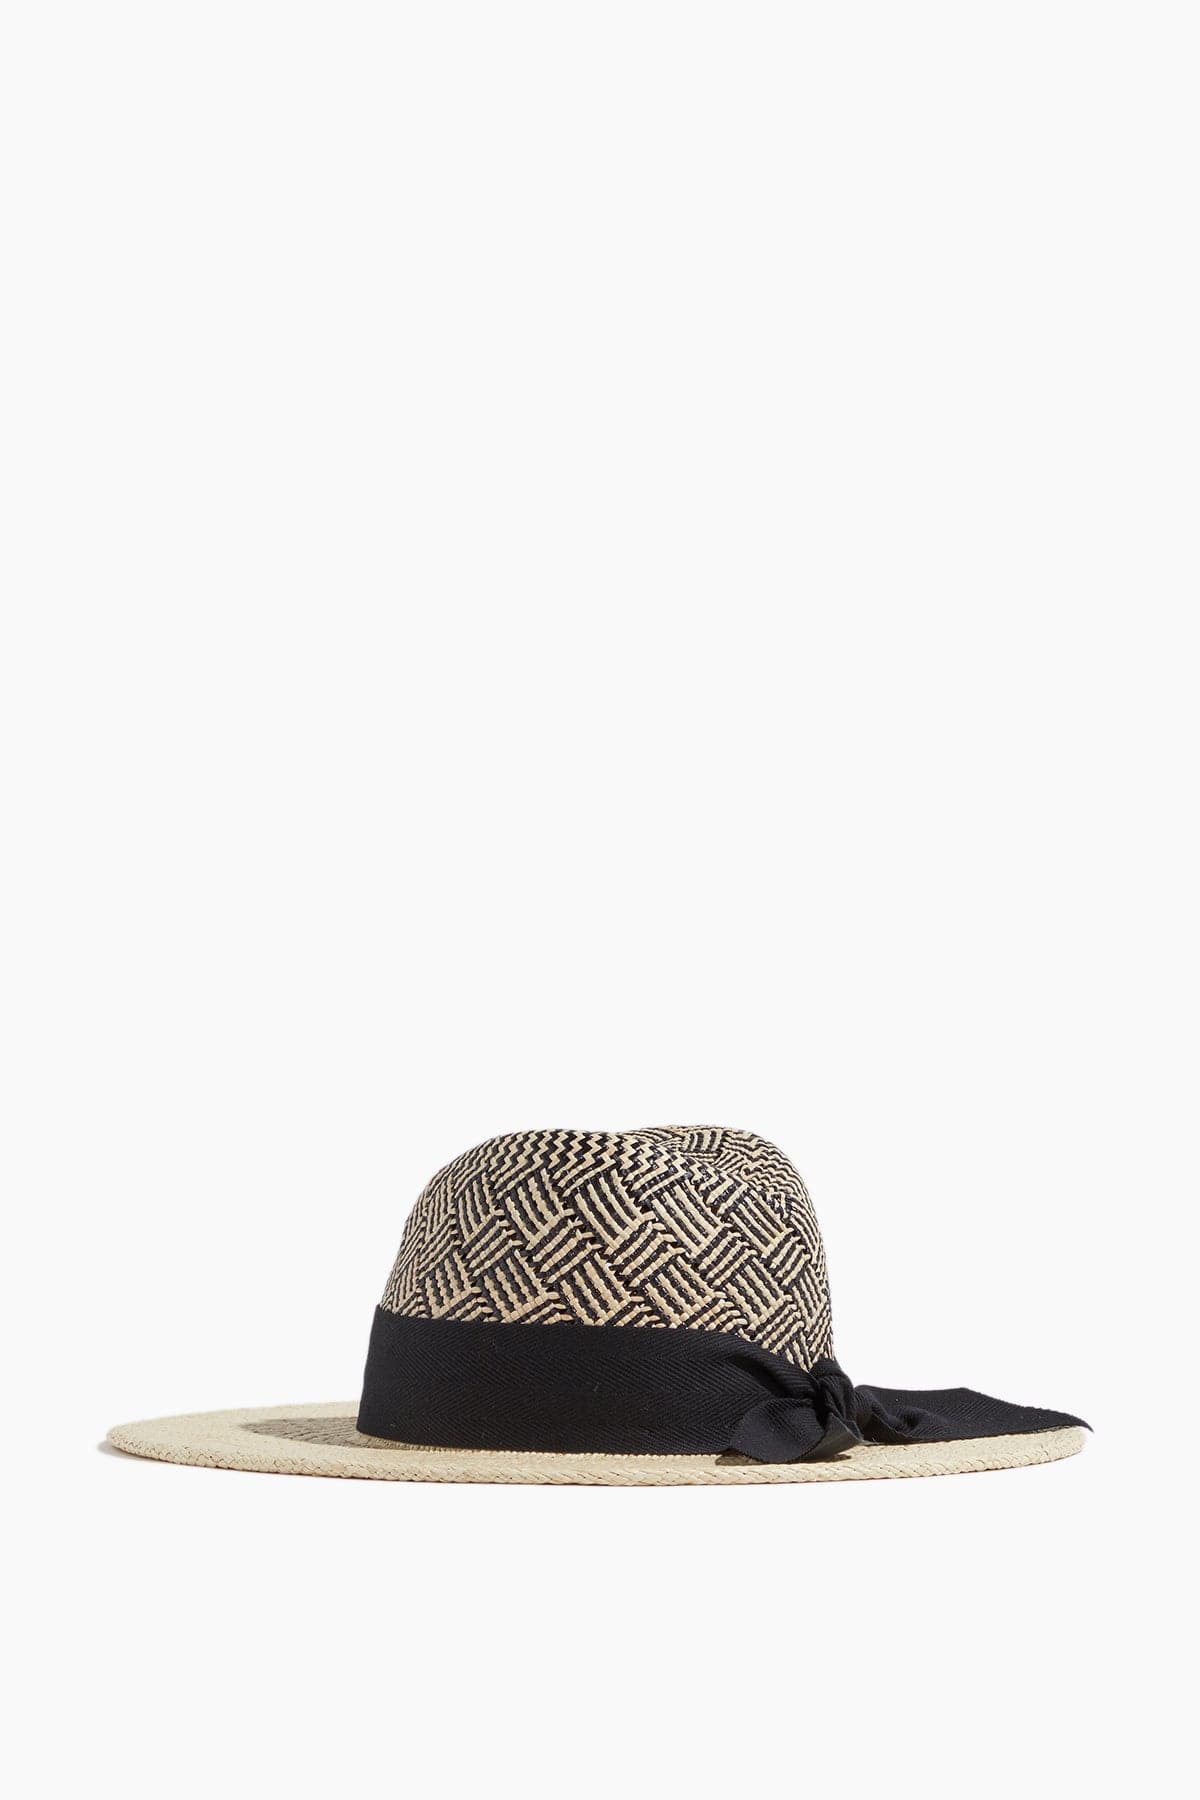 Gigi Burris Hats Jeanne Patterned Hat in Natural/Black Gigi Burris Jeanne Patterned Hat in Natural/Black